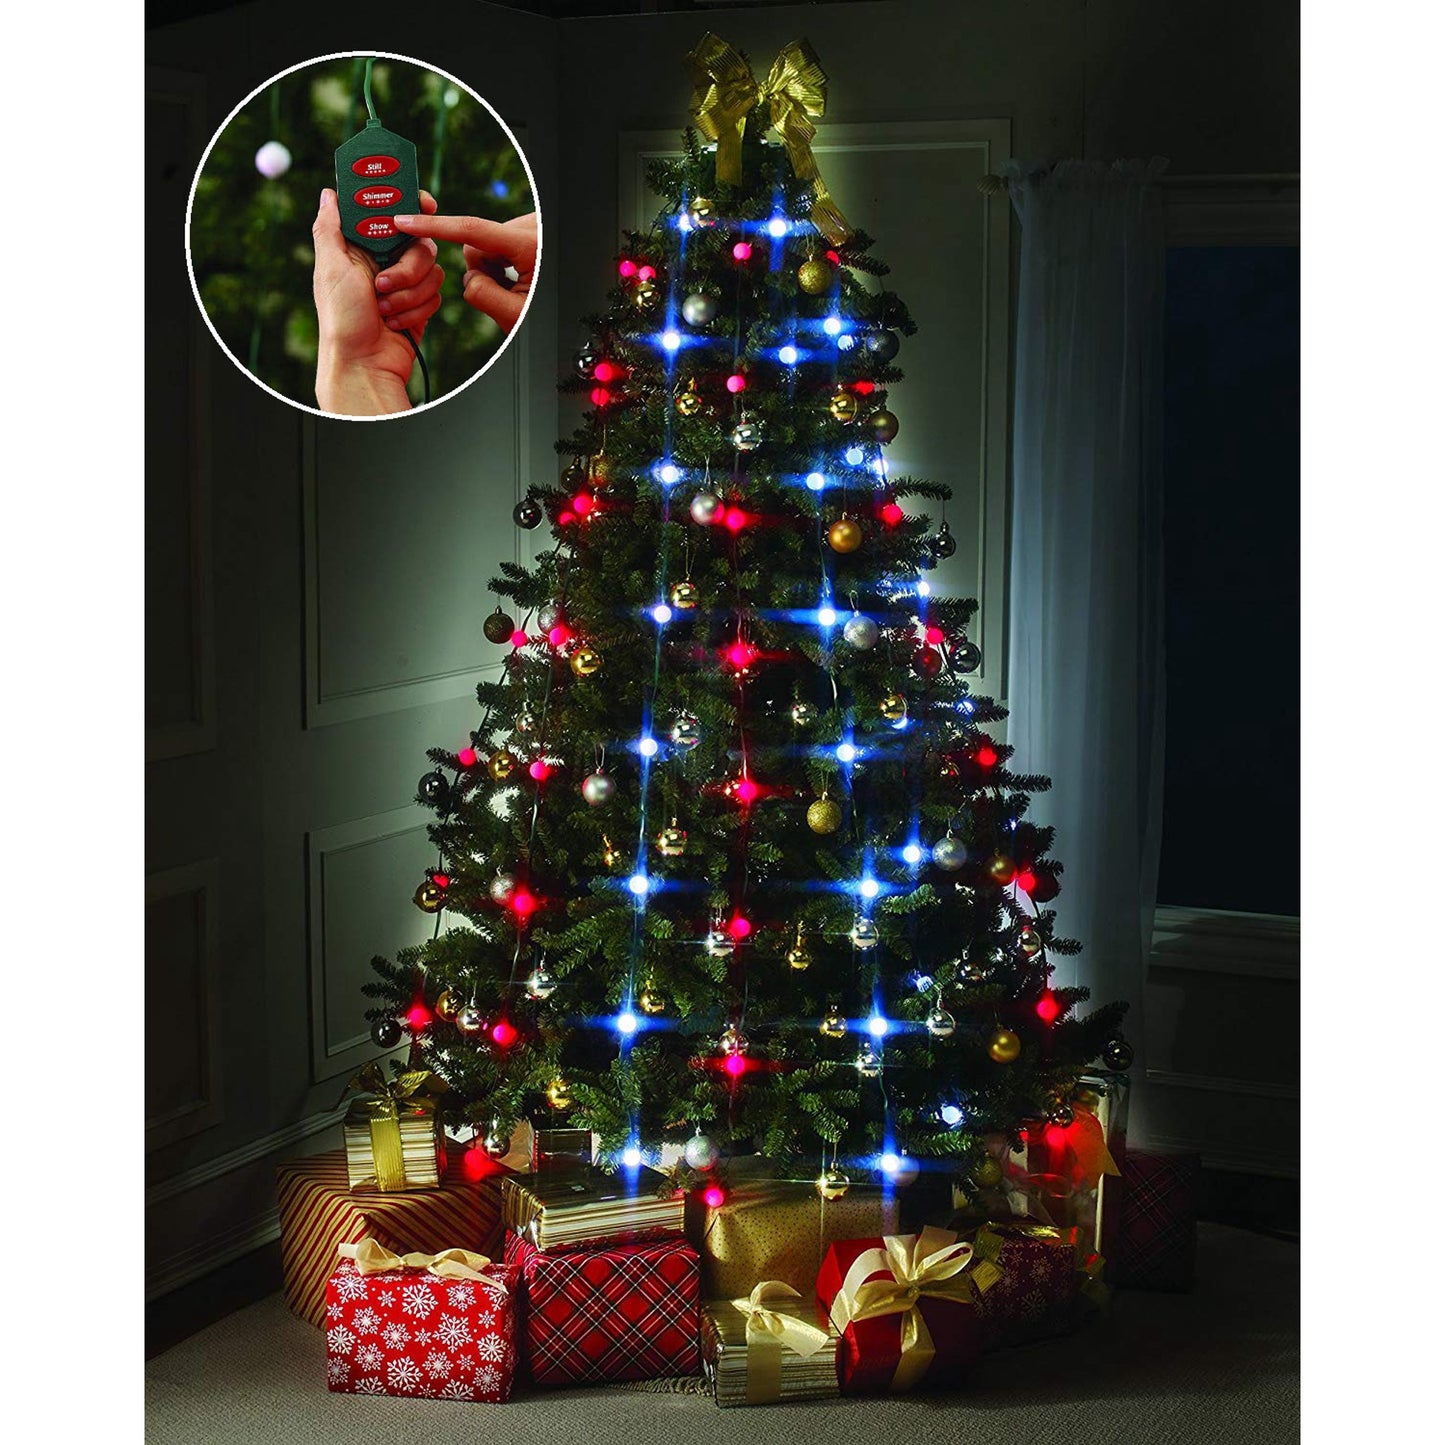 Φώτα άμεσης τοποθέτησης για το χριστουγεννιάτικο δέντρο, 64 LED, TreeDazzler